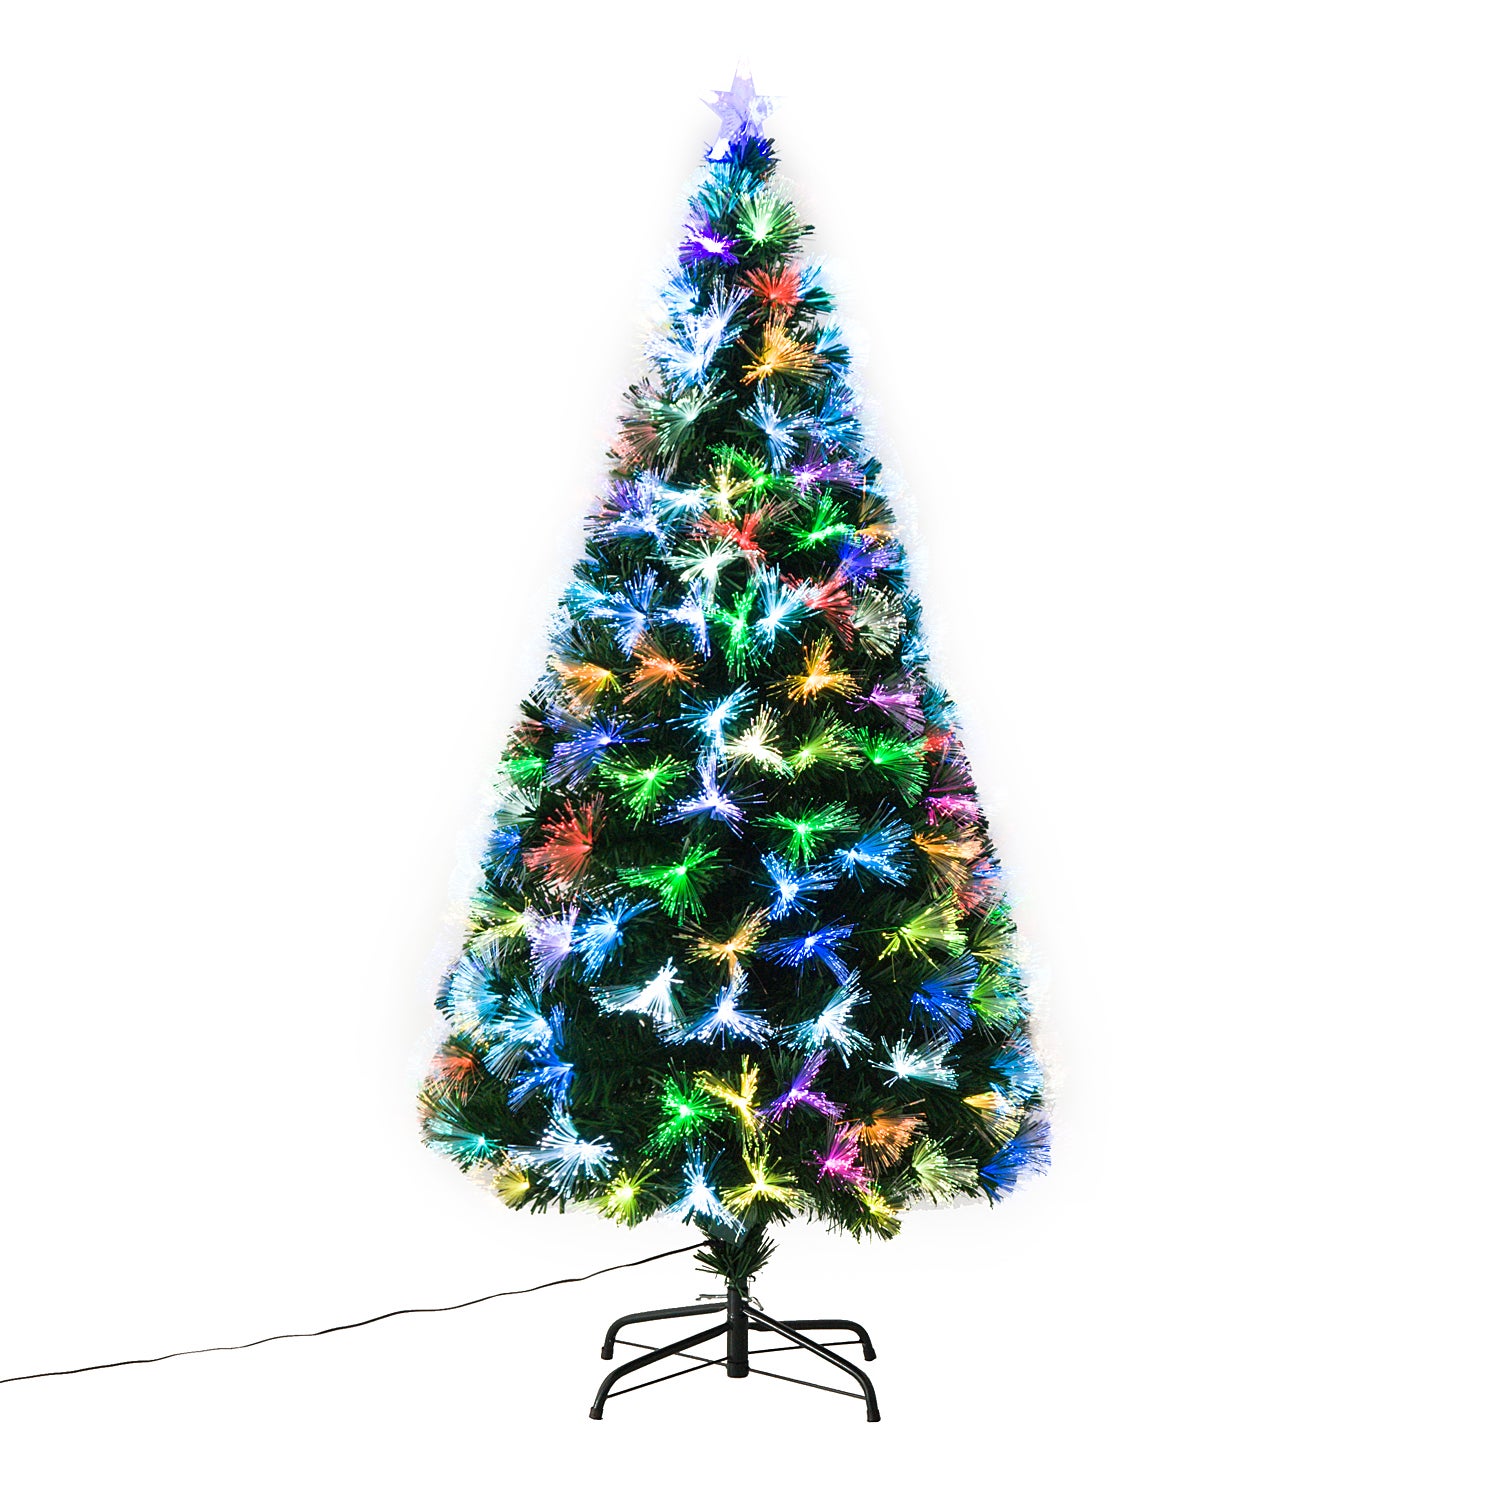 environ 0.61 m Noël fibre optique Strand Vert Arbre de Noël DEL Flashing changement de couleur 2 FT environ 1.83 m 6 ft 